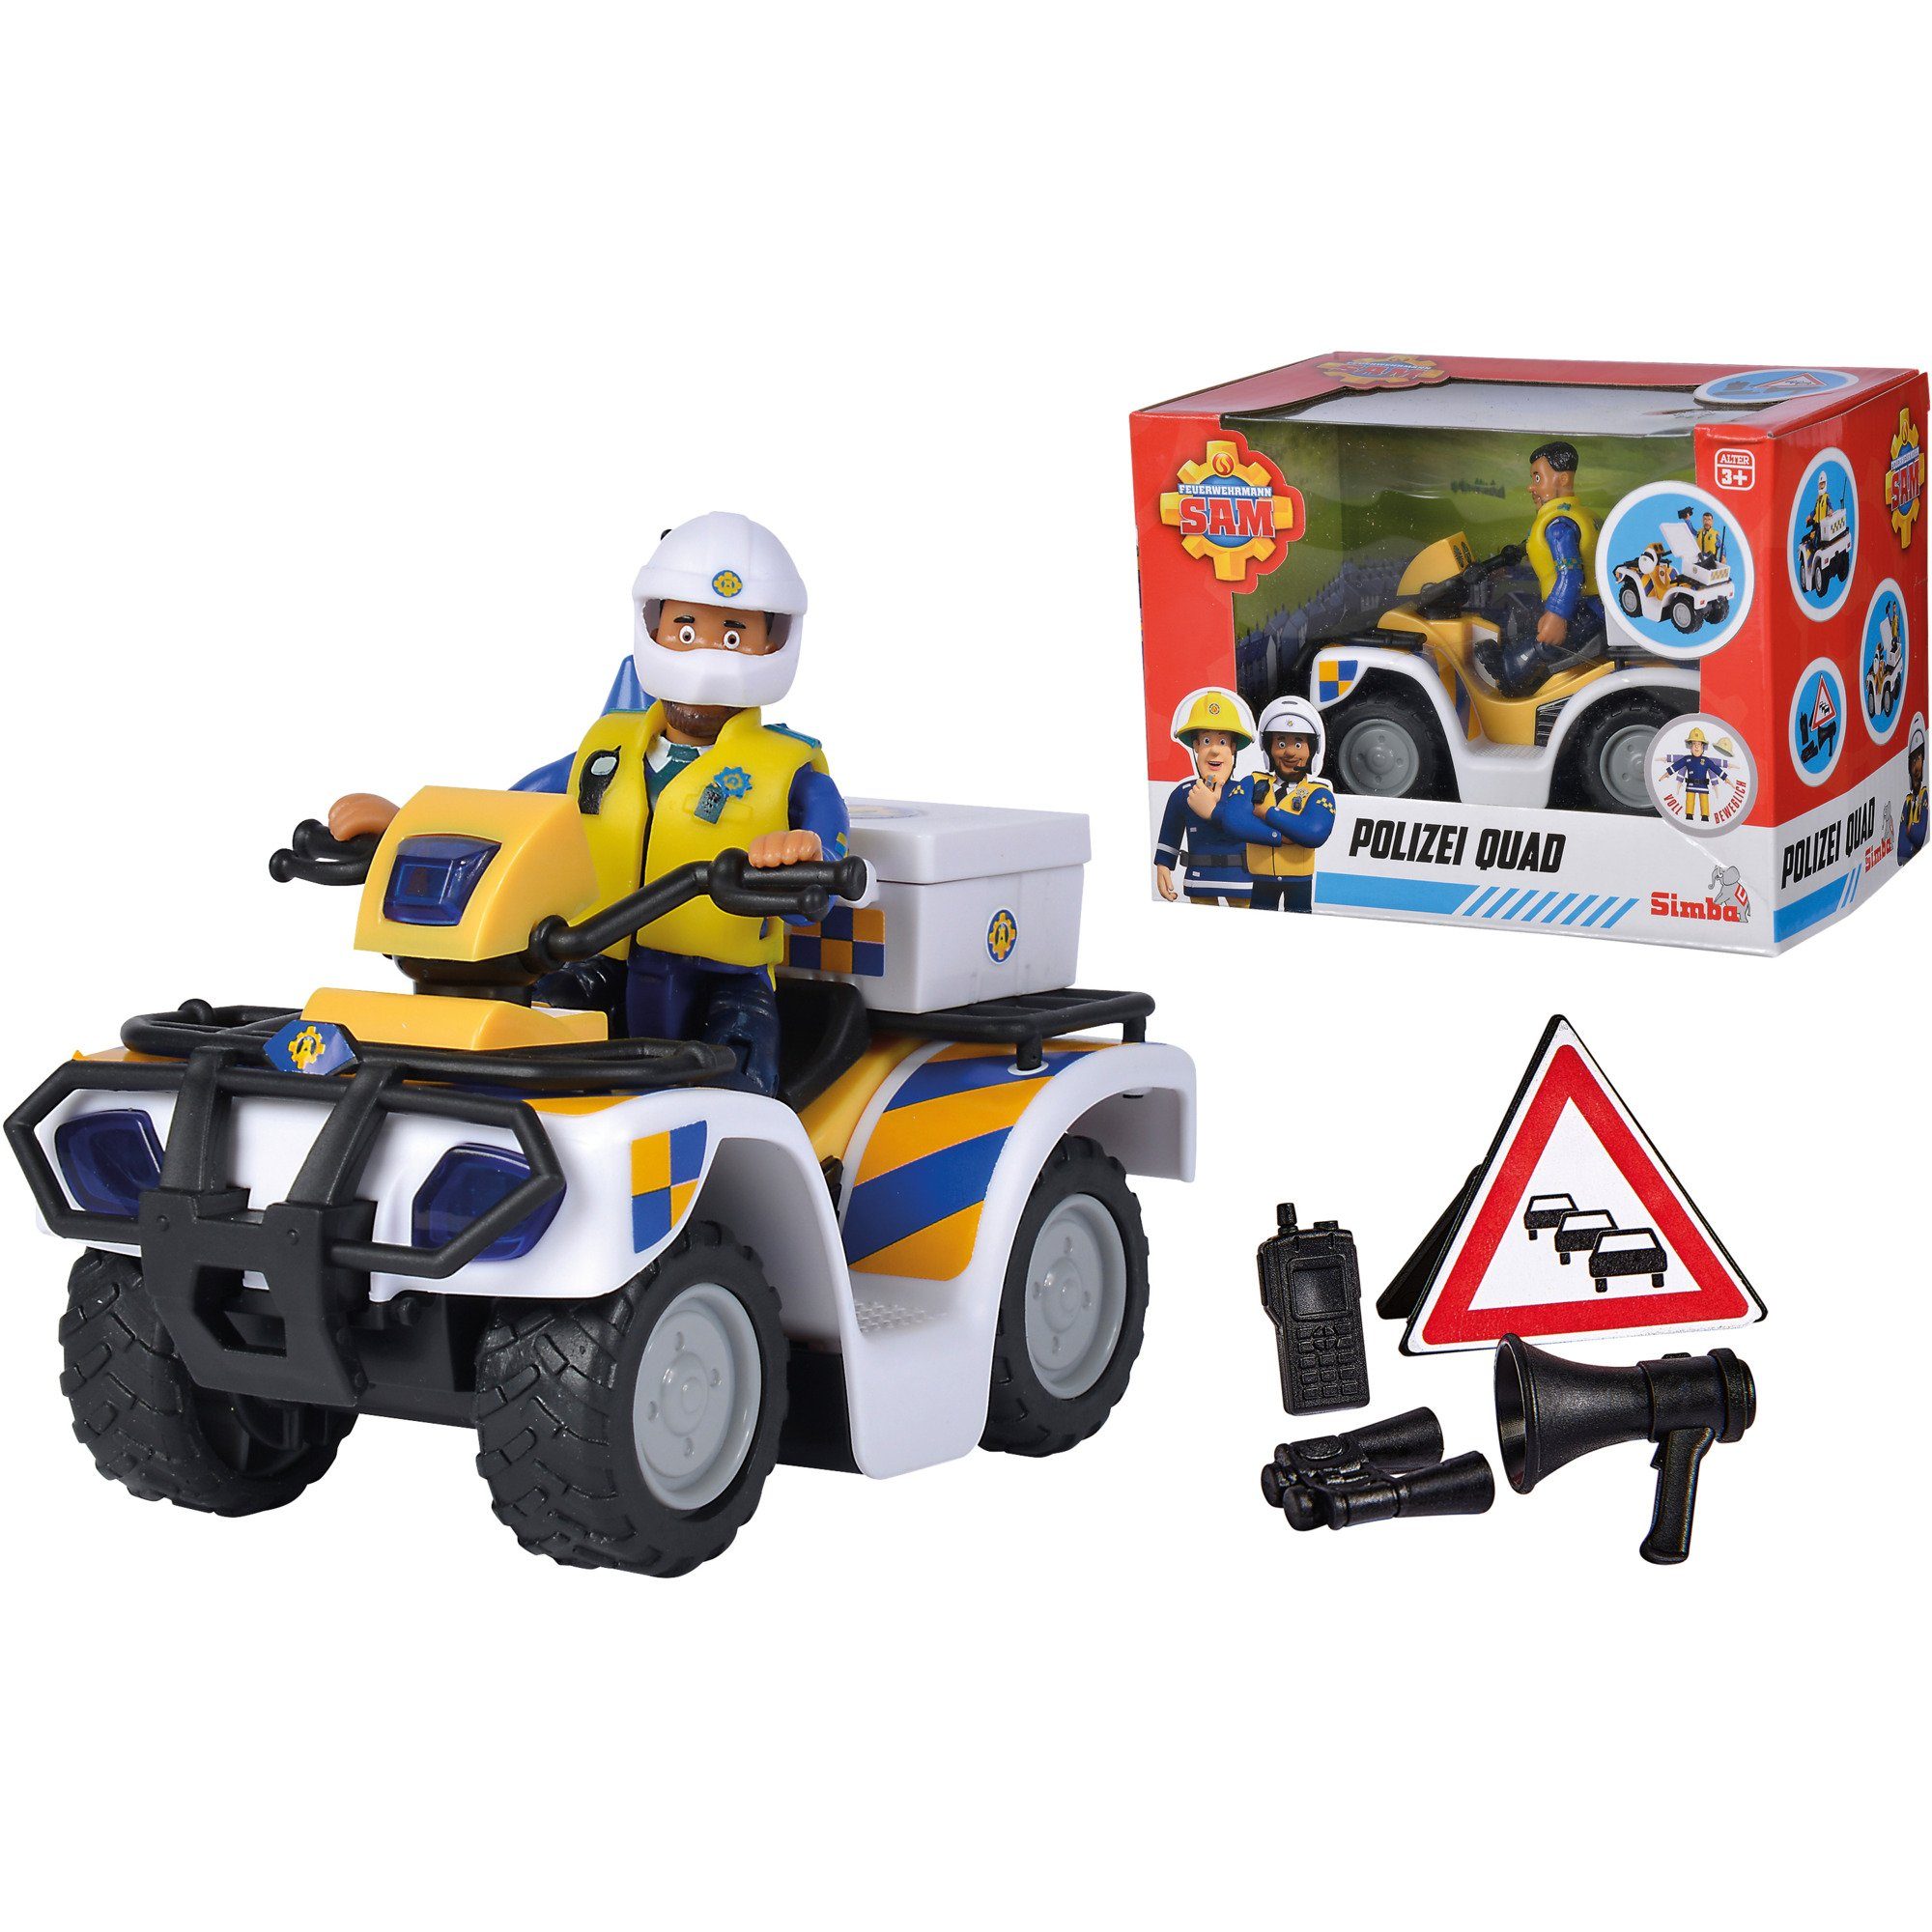 Feuerwehrmann Polizei-Quad SIMBA Spielzeug-Auto Sam